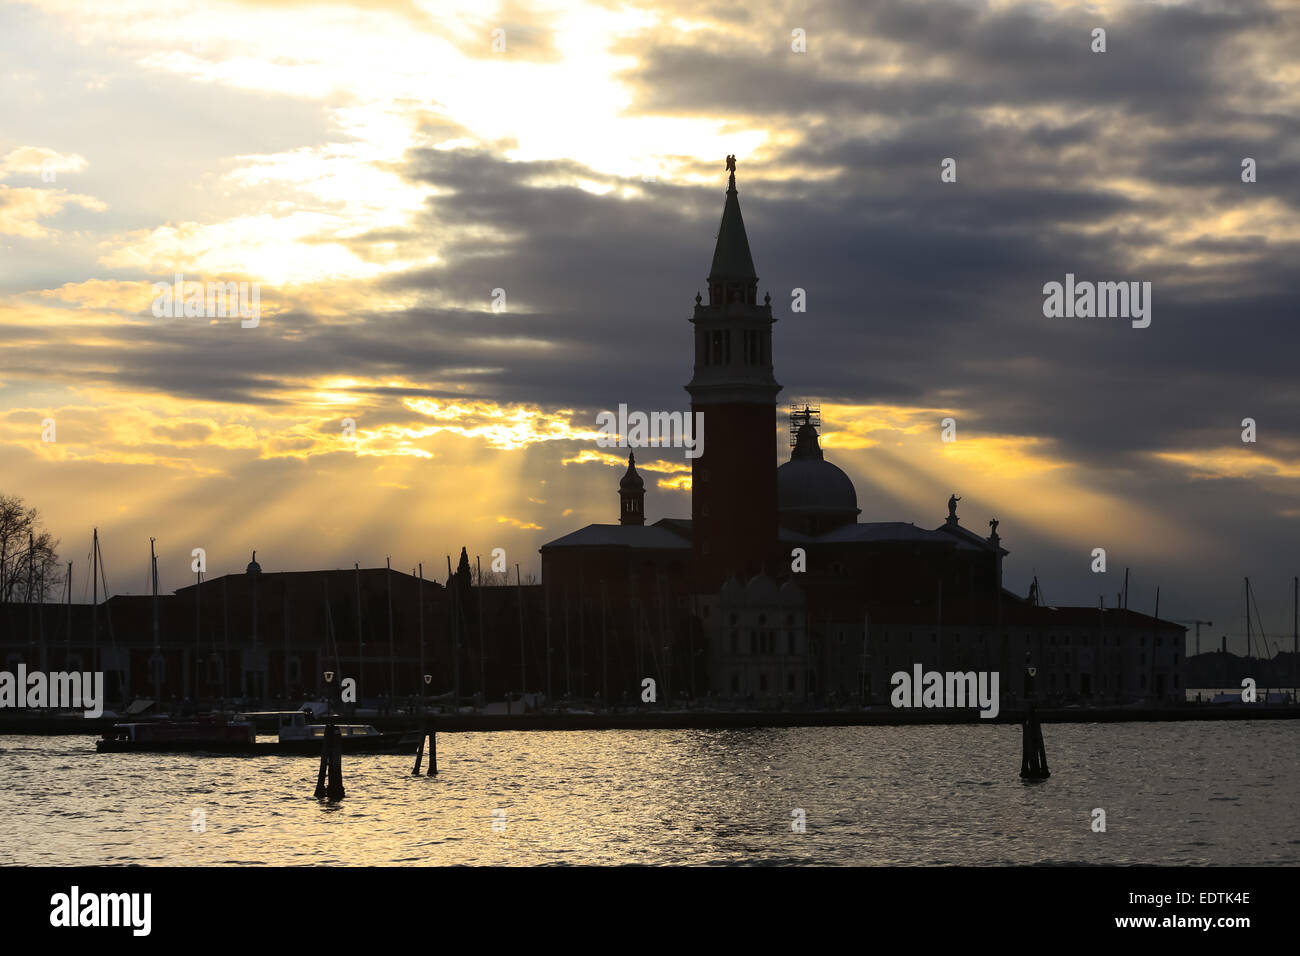 Una veduta della chiesa di San Giorgio Maggiore al tramonto sull'isola di San Giorgio Maggioree a Venezia, Italia. Foto Stock